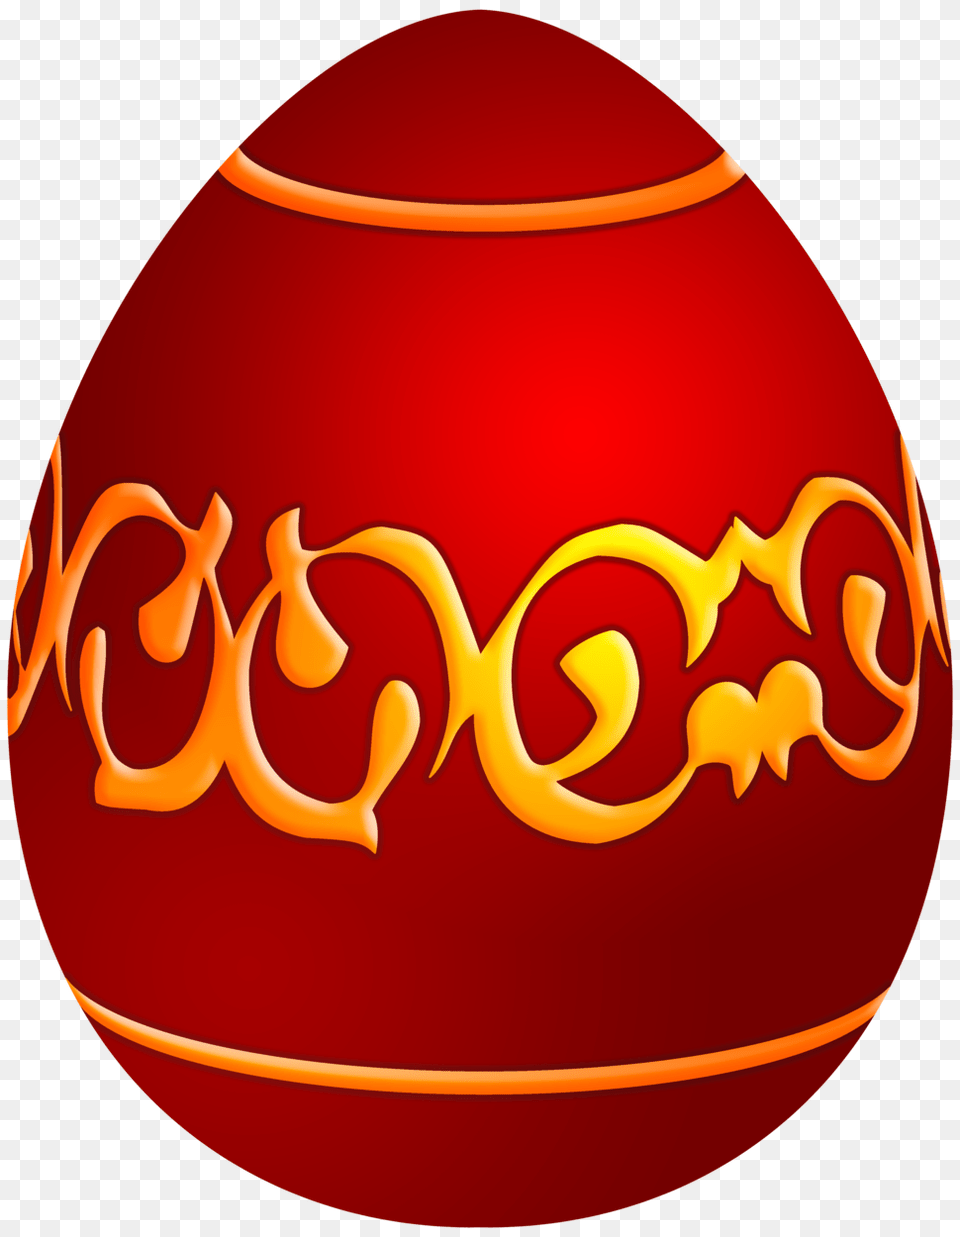 Easter Decorative Red Egg Clip Art, Food, Easter Egg, Ketchup Png Image